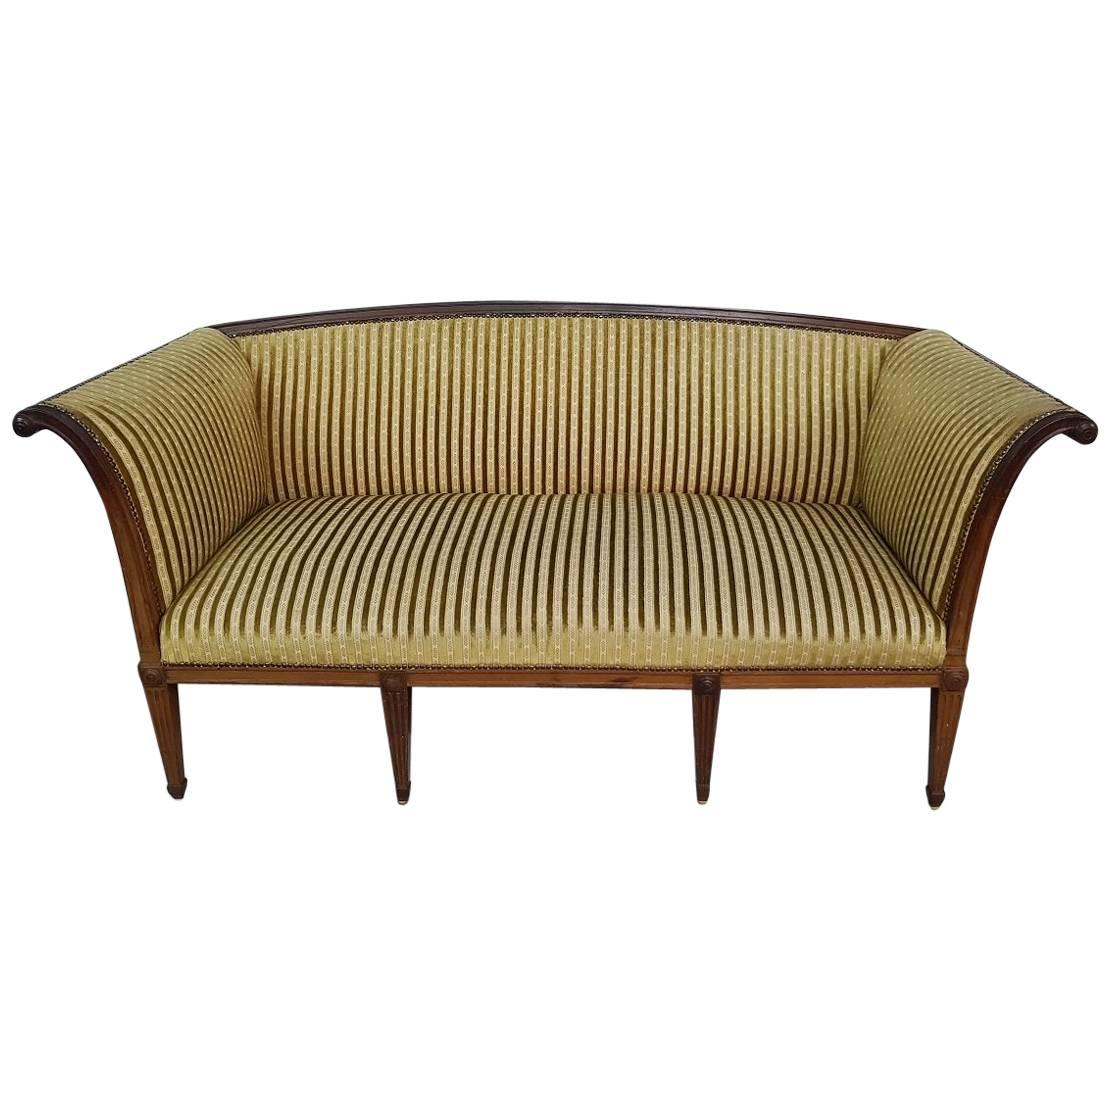 Late 19th Century French Mahogany Louis XVI Style Sofa